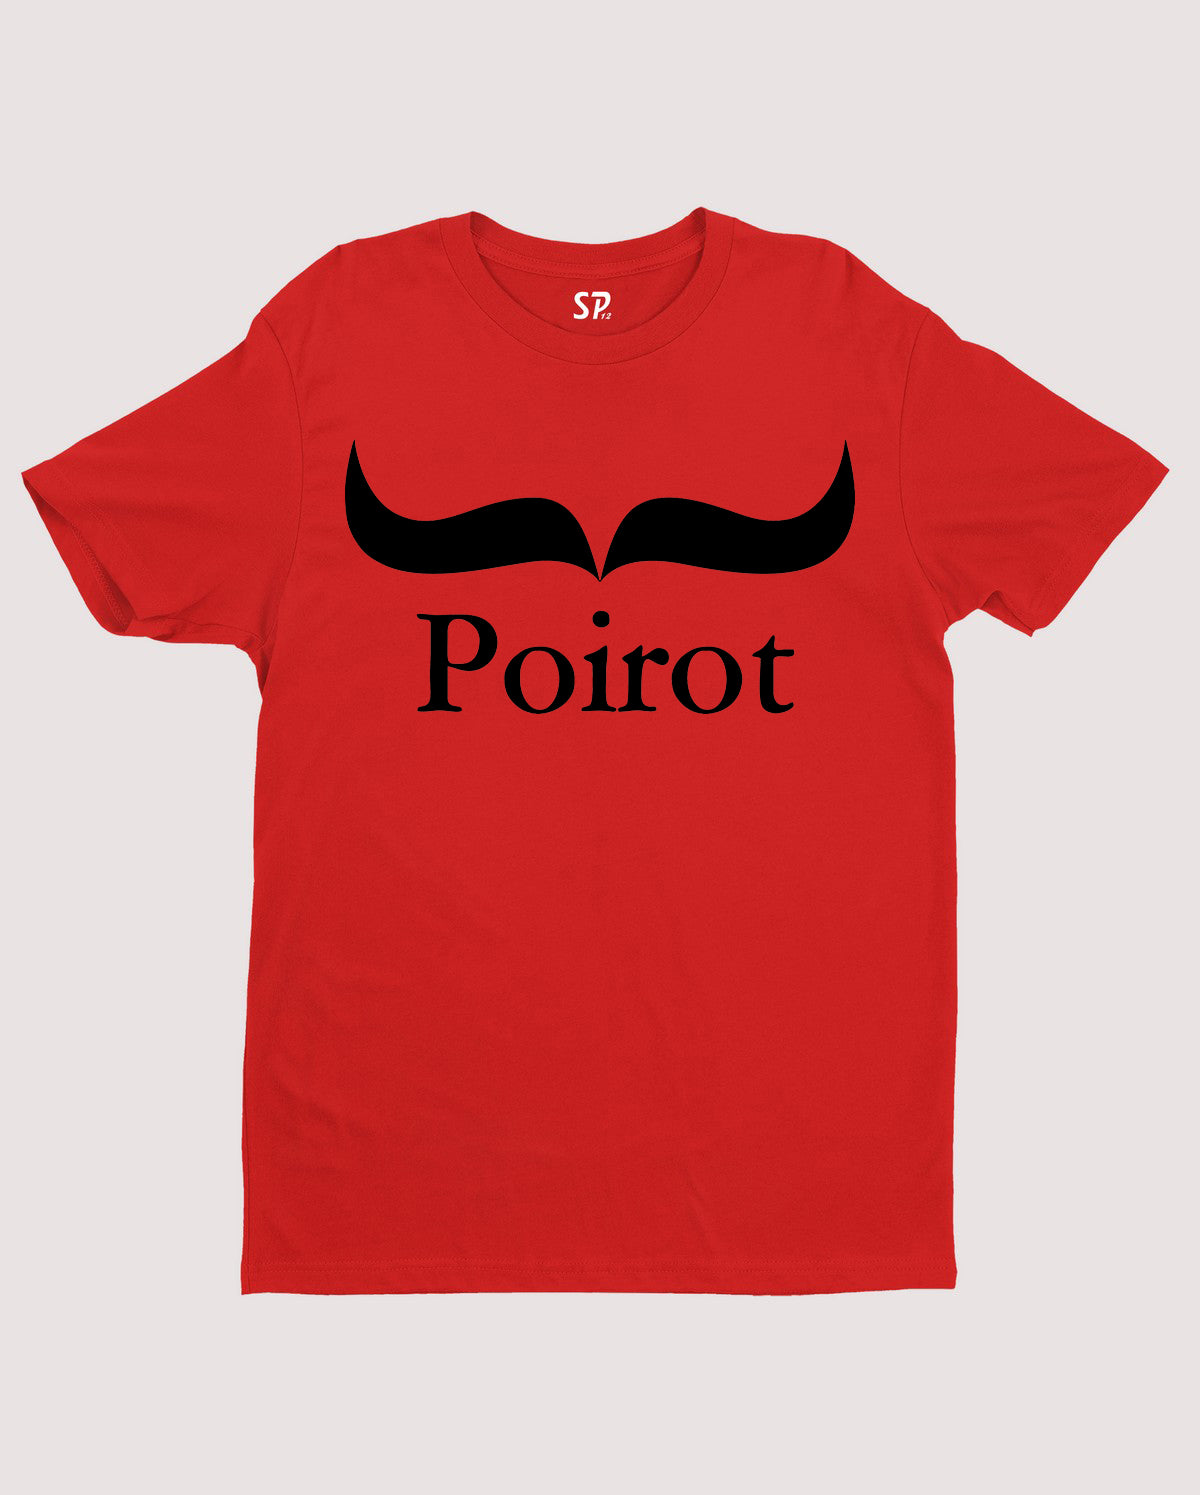 Poirot Mustache Character Cartoon Funny T shirt